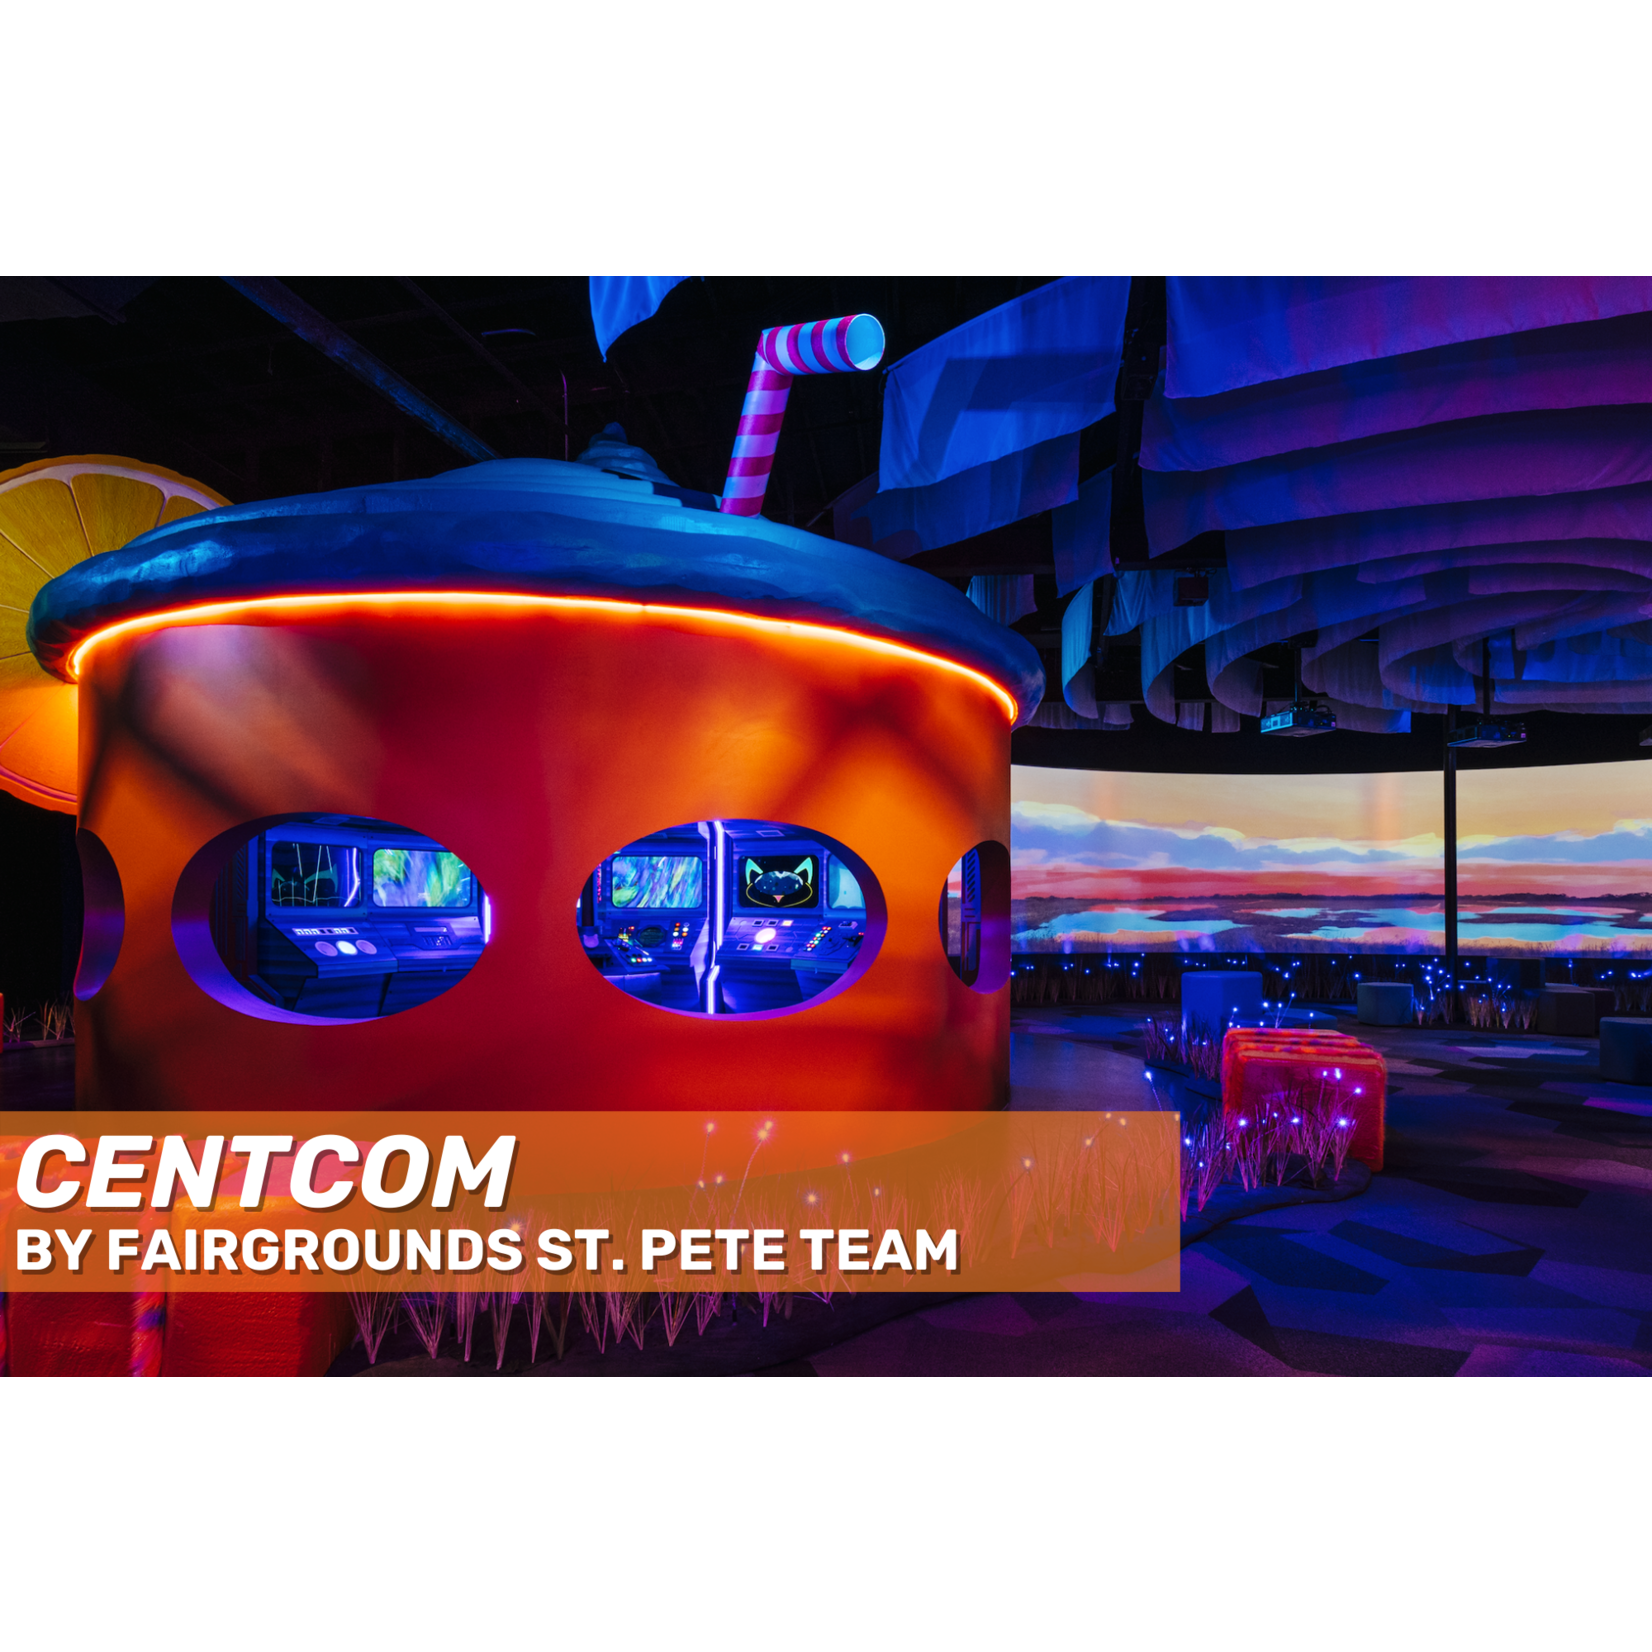 Fairgrounds St. Pete Fairgrounds St. Pete "CENTCOM" Magnet (3 Inch)